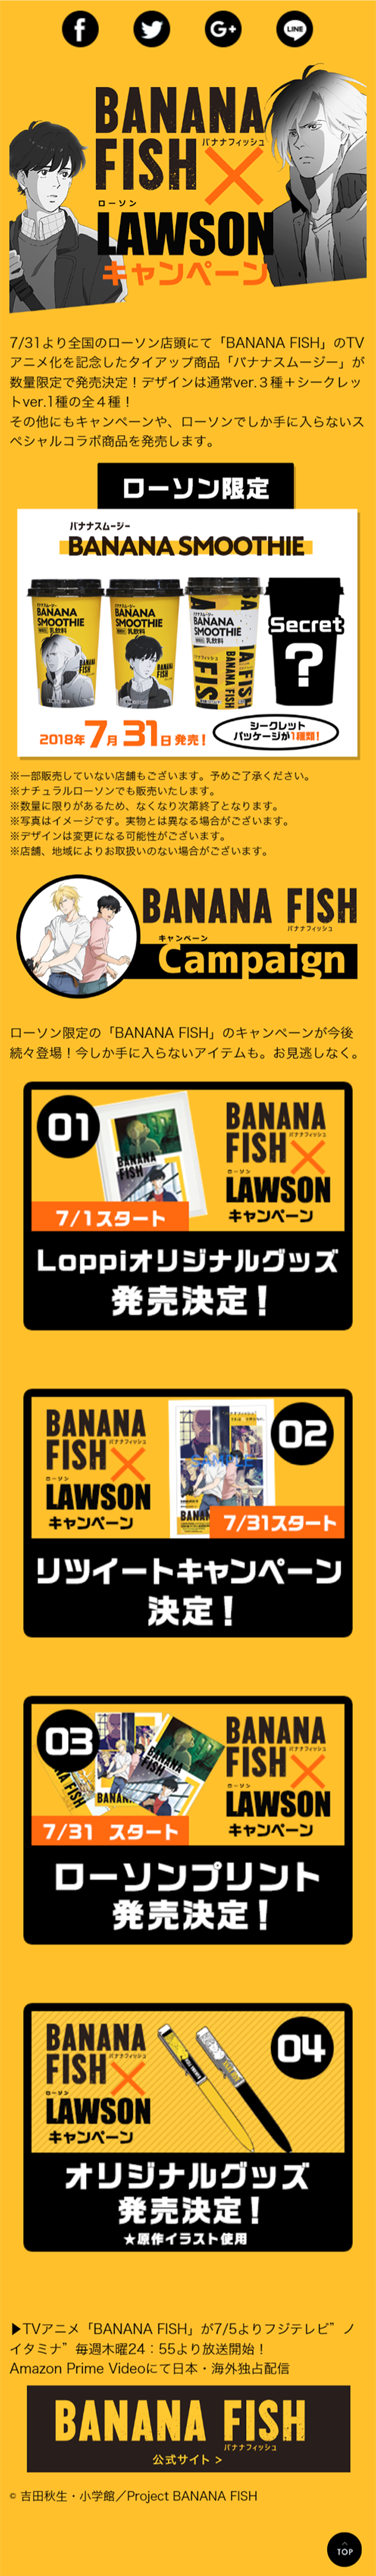 BANANA FISH×ローソンキャンペーン_sp_1